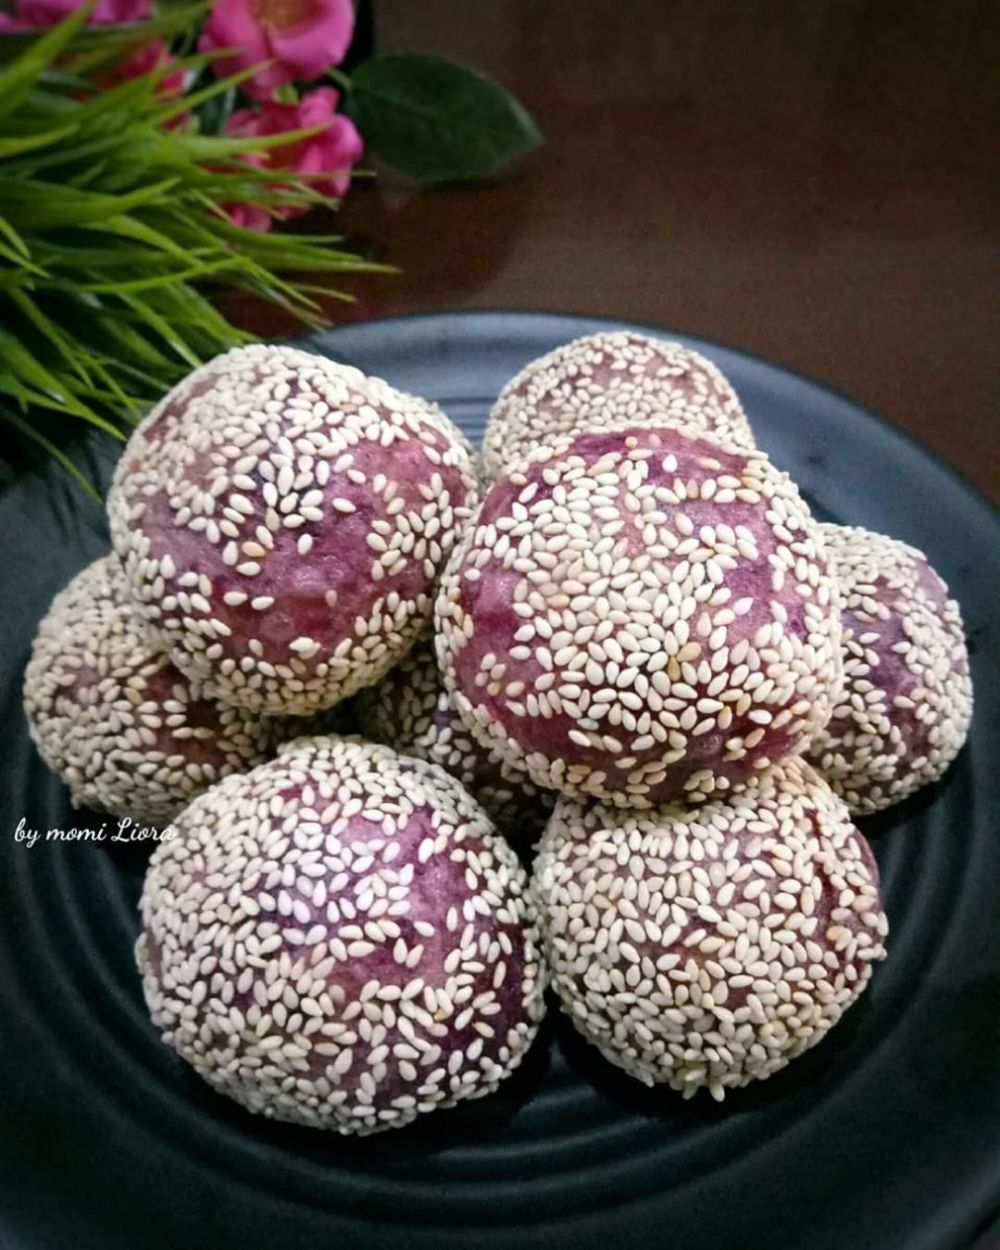 15 Resep camilan dari ubi ungu ala rumahan, sederhana dan enak